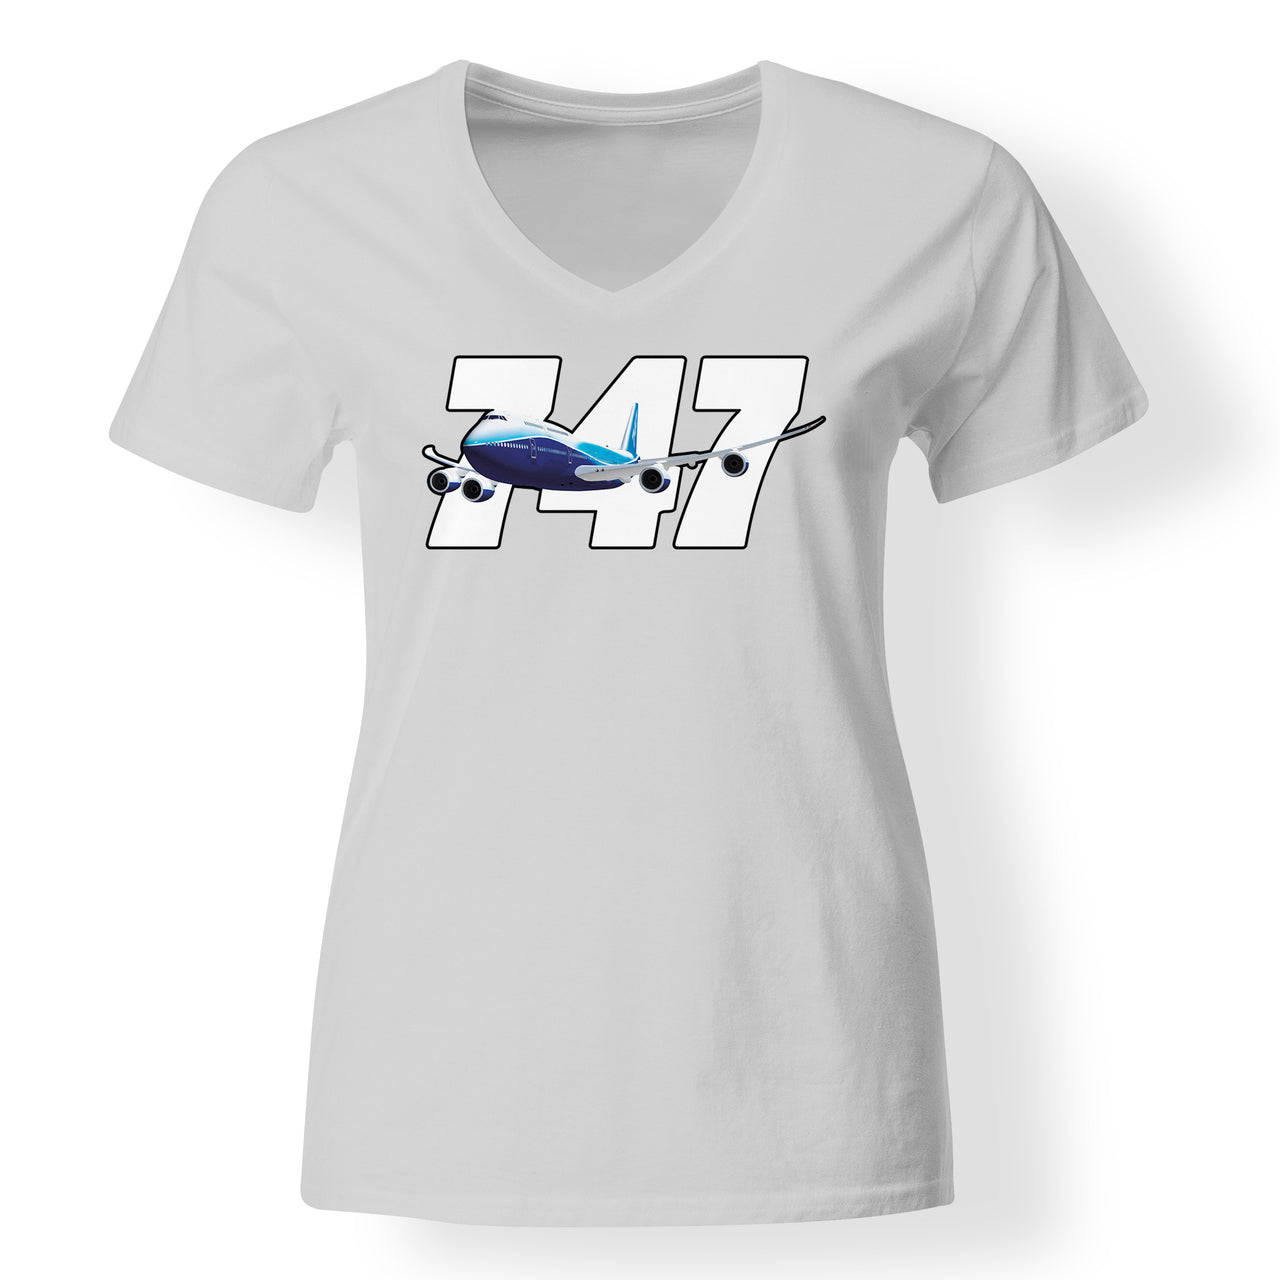 Super Boeing 747 Designed V-Neck T-Shirts